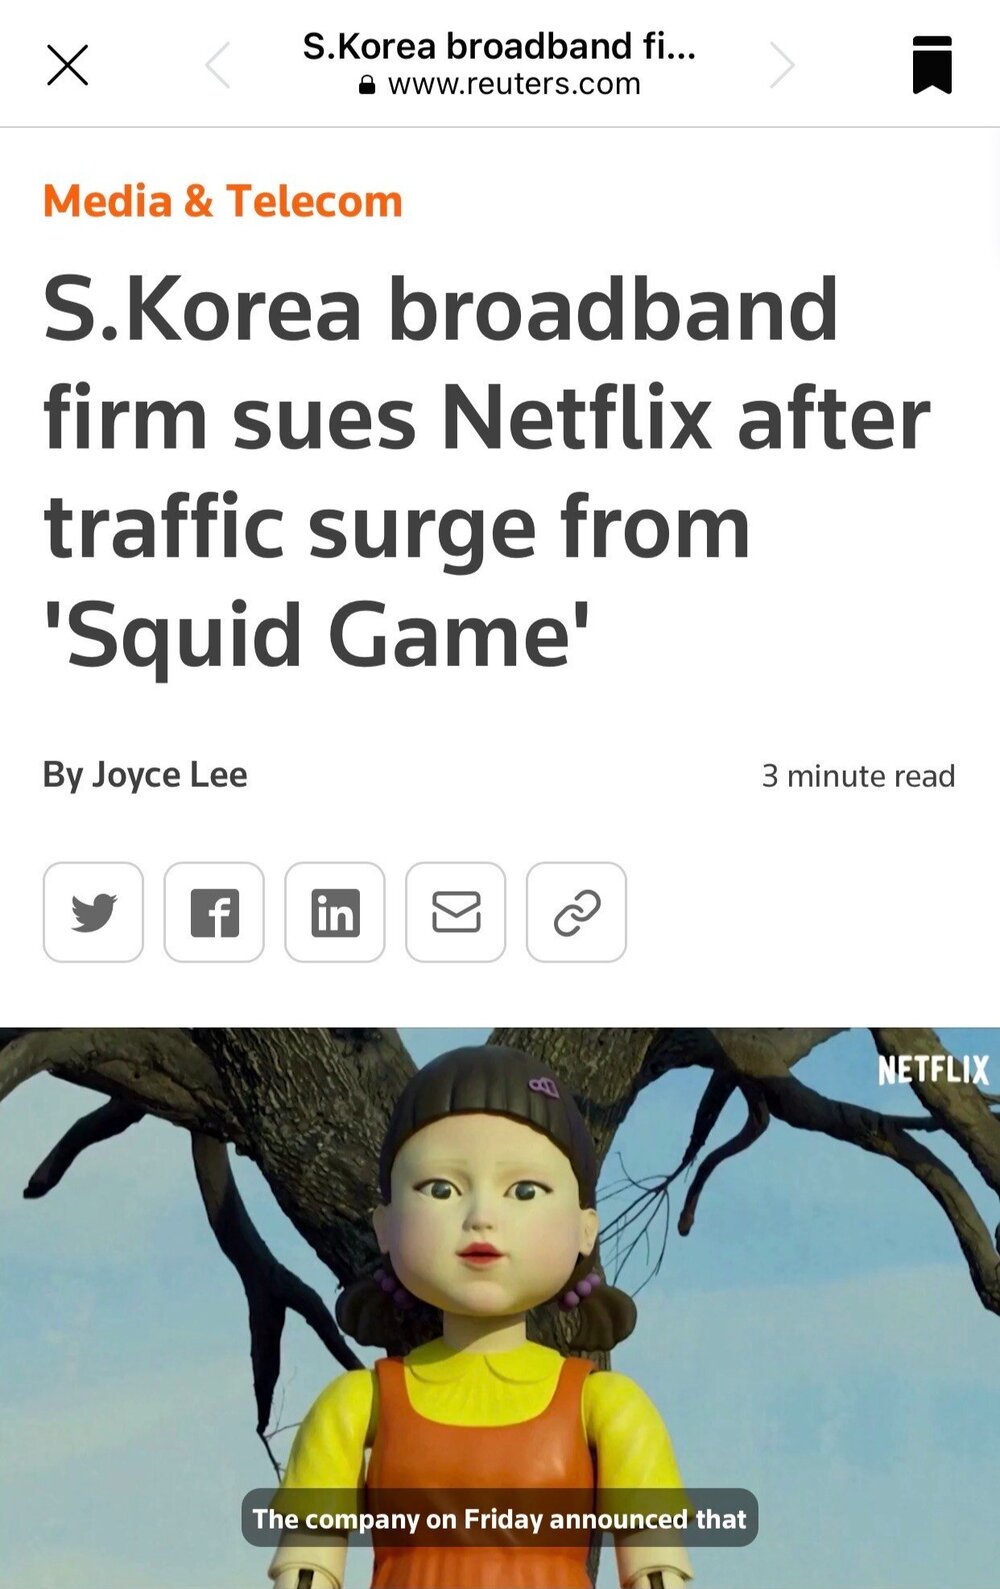 Squid+Game+Netflix+Broadband+Suit.jpg